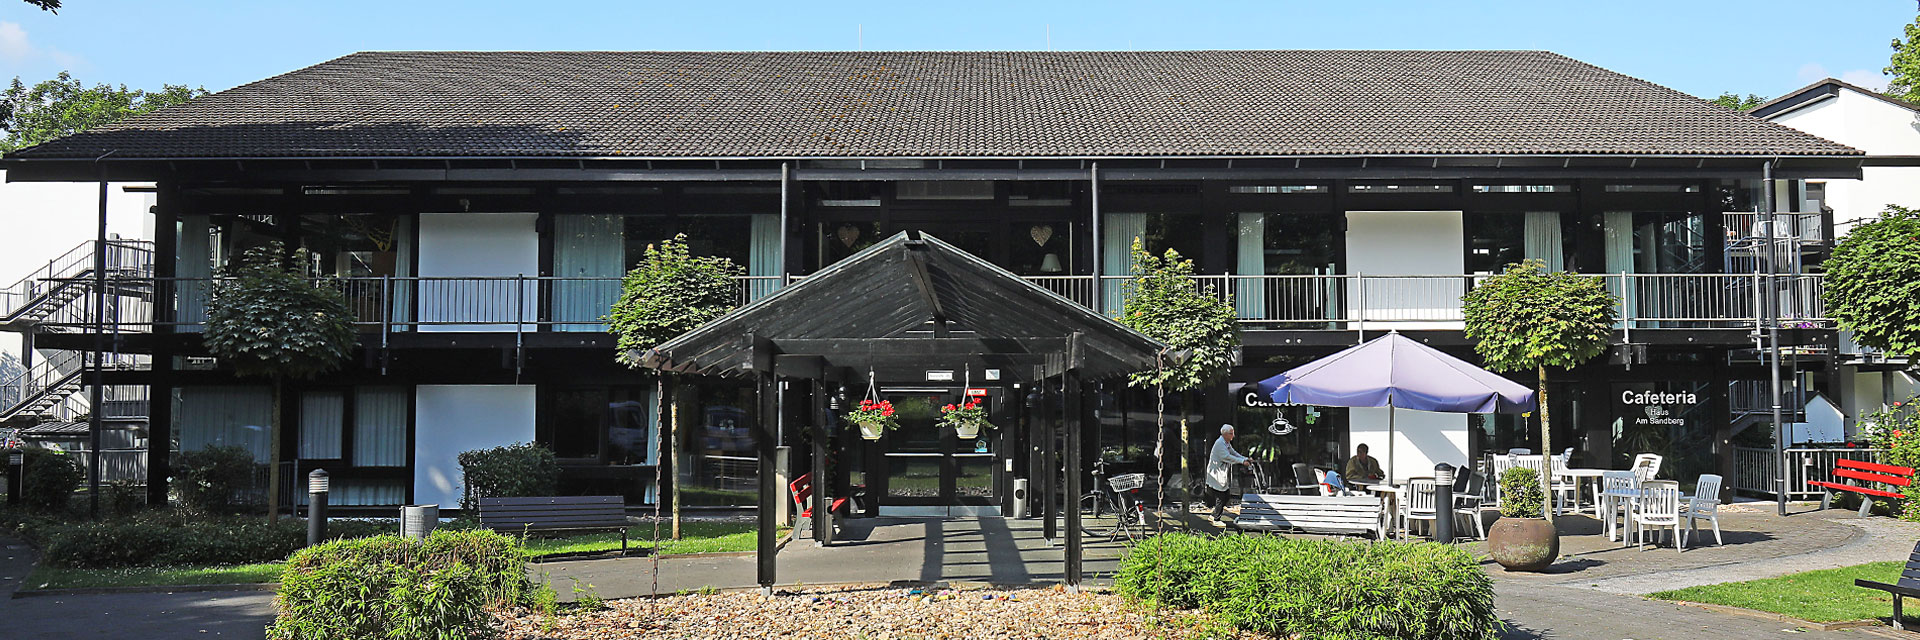 DRK Haus am Sandberg Startseite